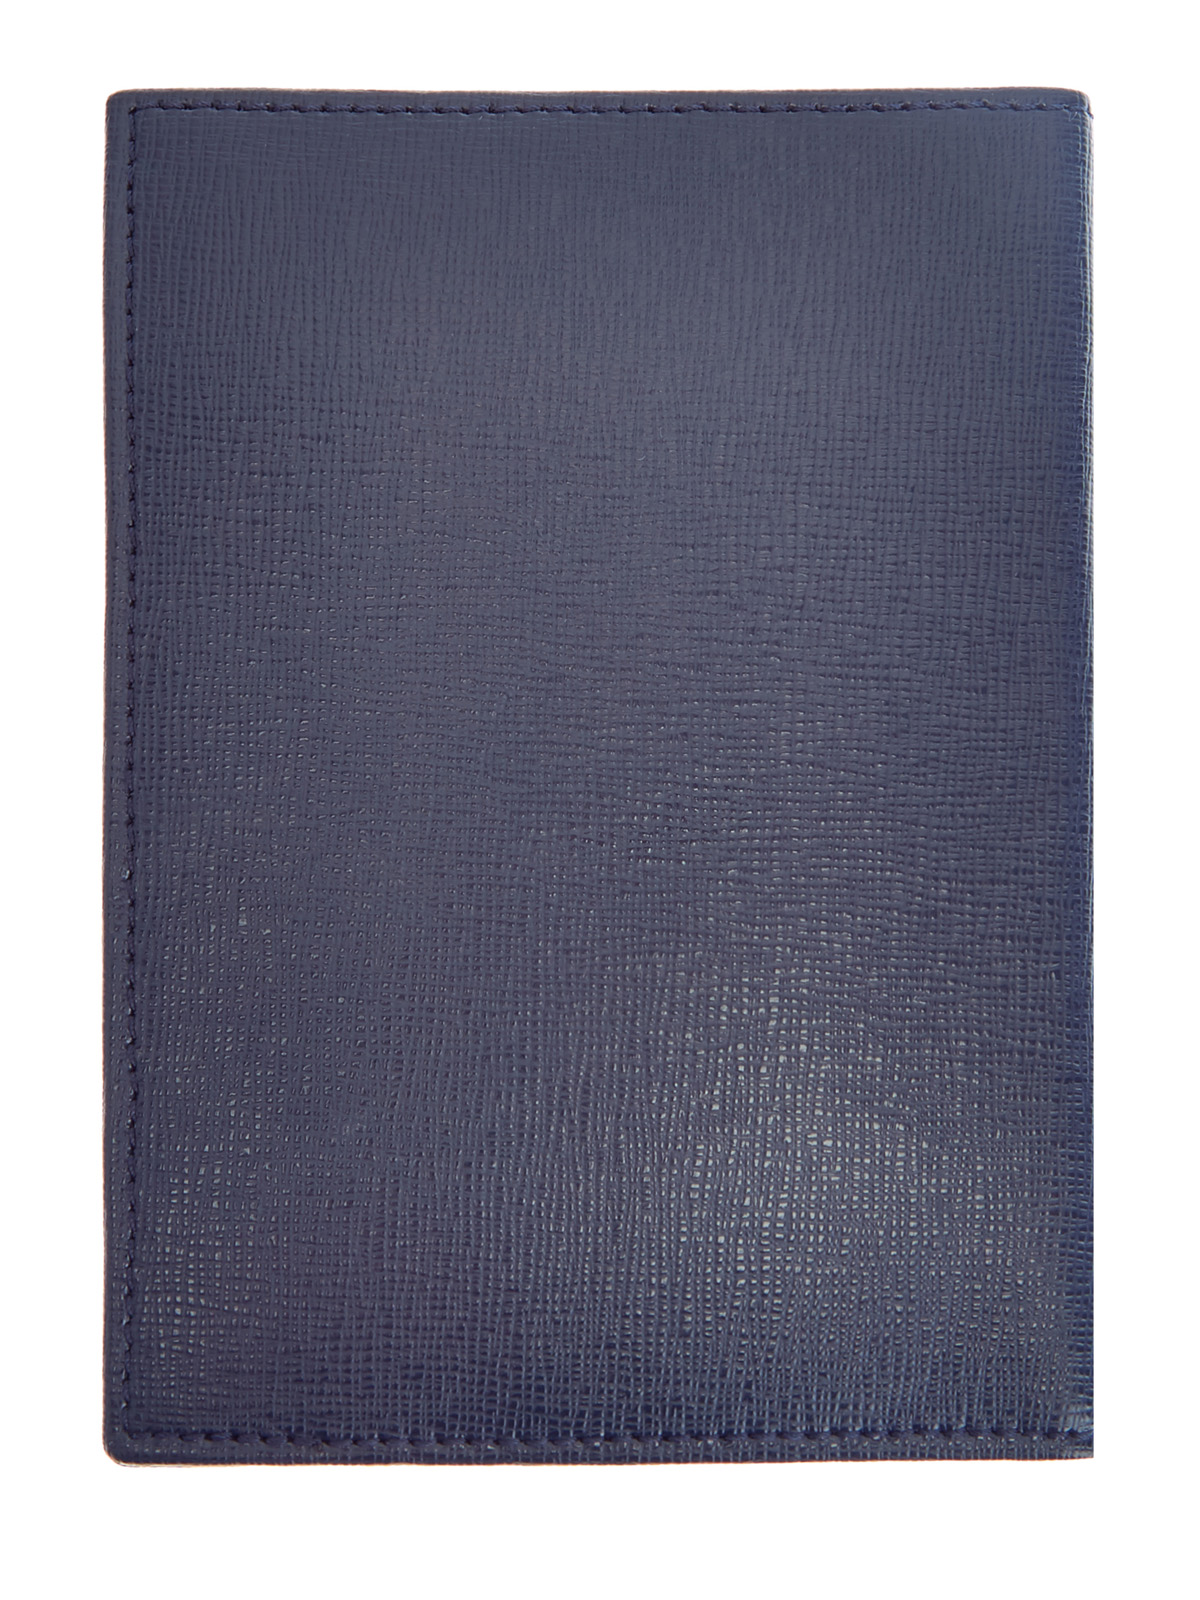 Кожаная обложка для паспорта с литым логотипом MORESCHI, цвет синий, размер 40;41;41.5;43;43.5;44;42 - фото 3